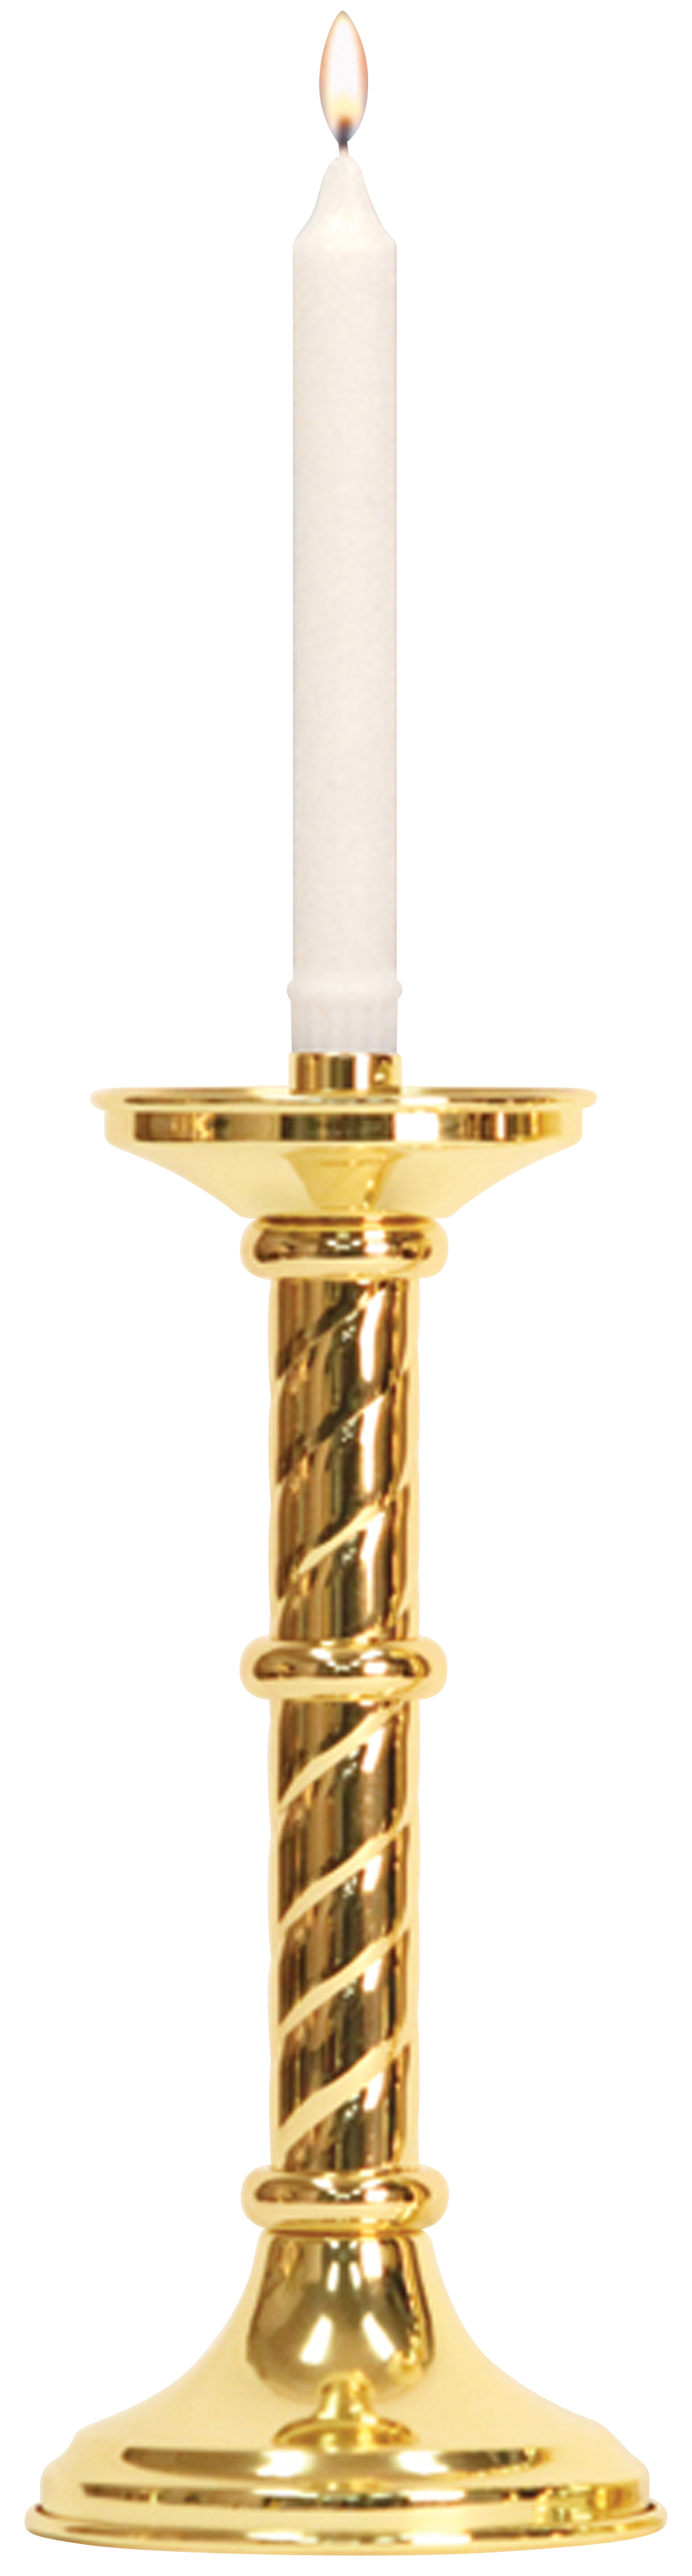 Altar Candlestick 12 inch Helix Design 7/8 Socket